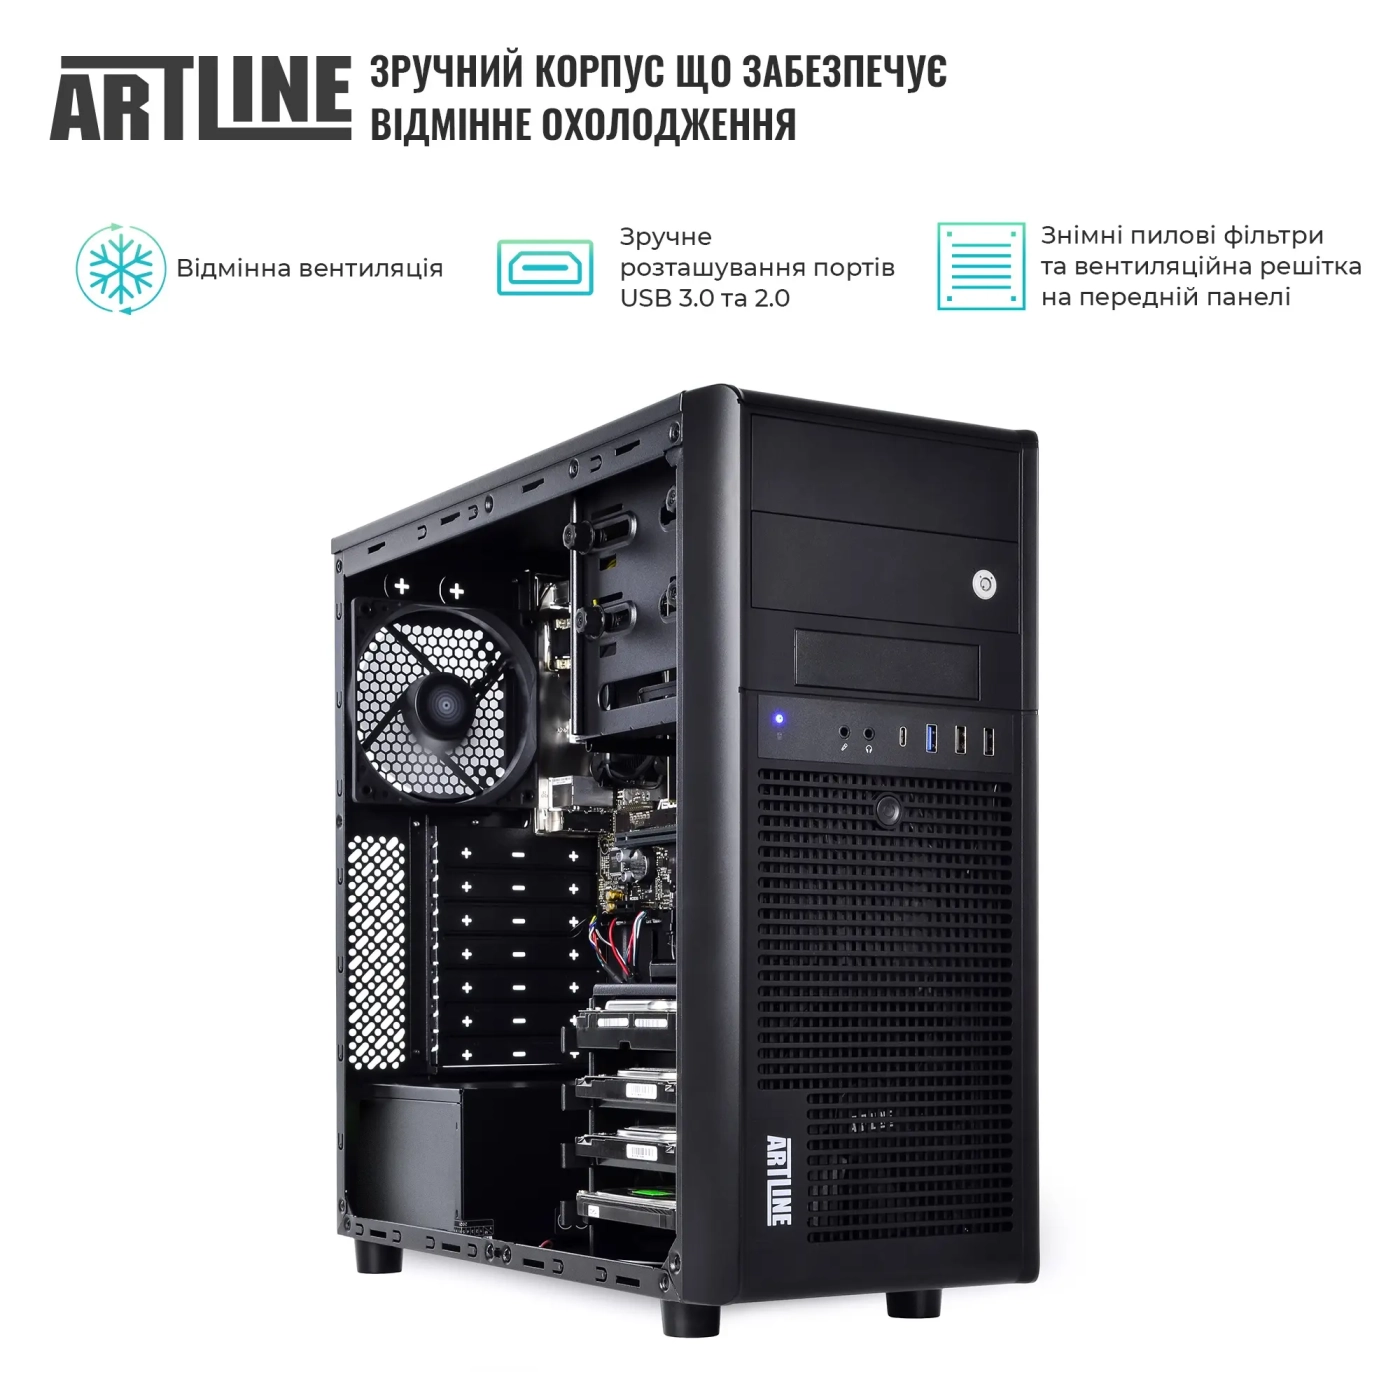 Купить Сервер ARTLINE Business T38 (T38v30) - фото 3